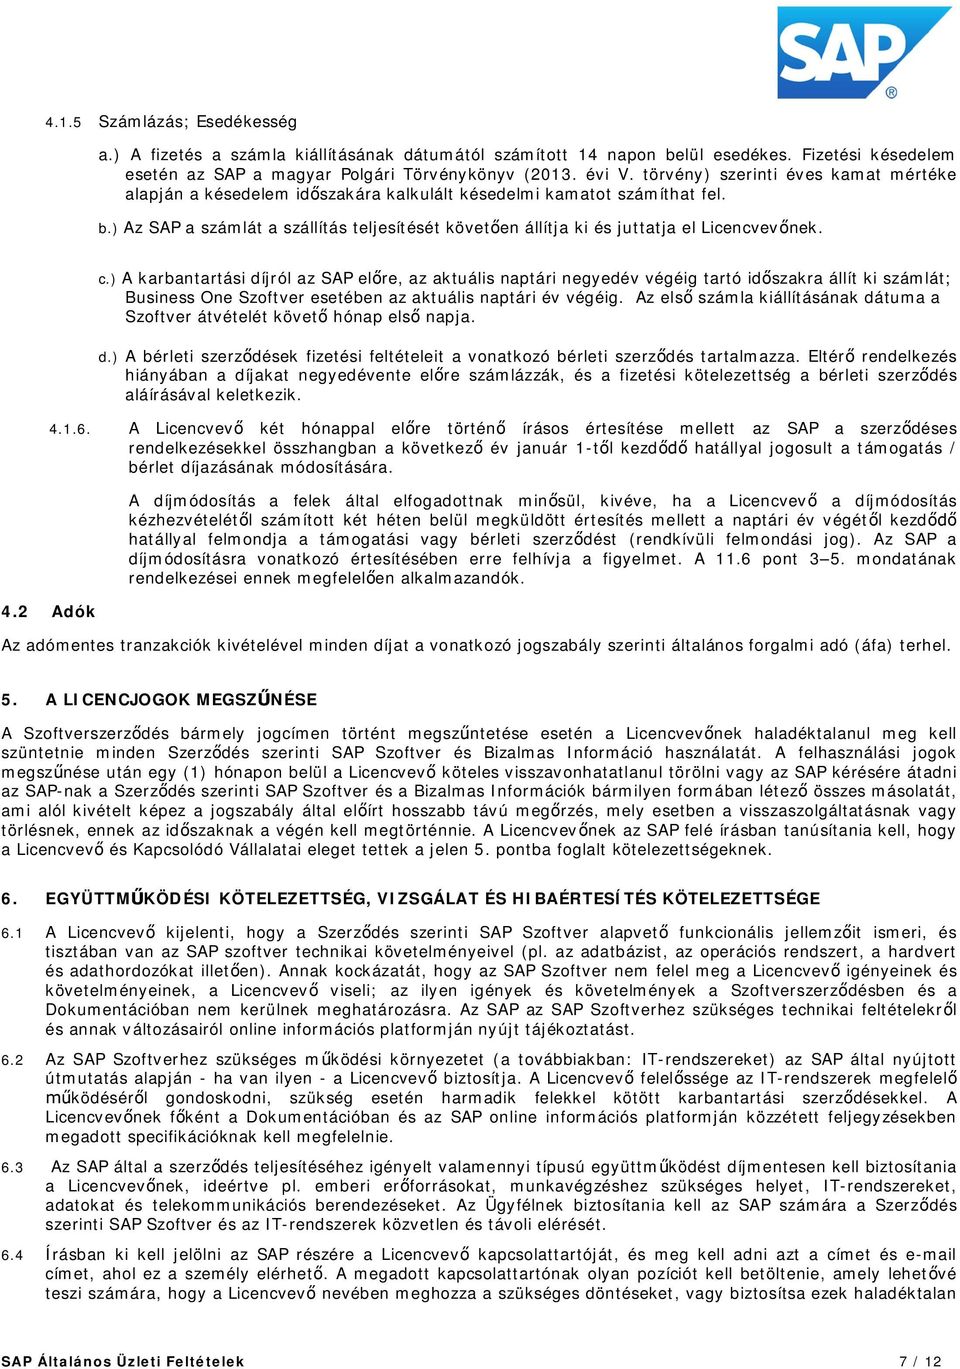 Általános Üzleti Feltételek Szoftverlicenc- és támogatási szerz dés SAP  Hungary Kft. ("ÁÜF") - PDF Ingyenes letöltés